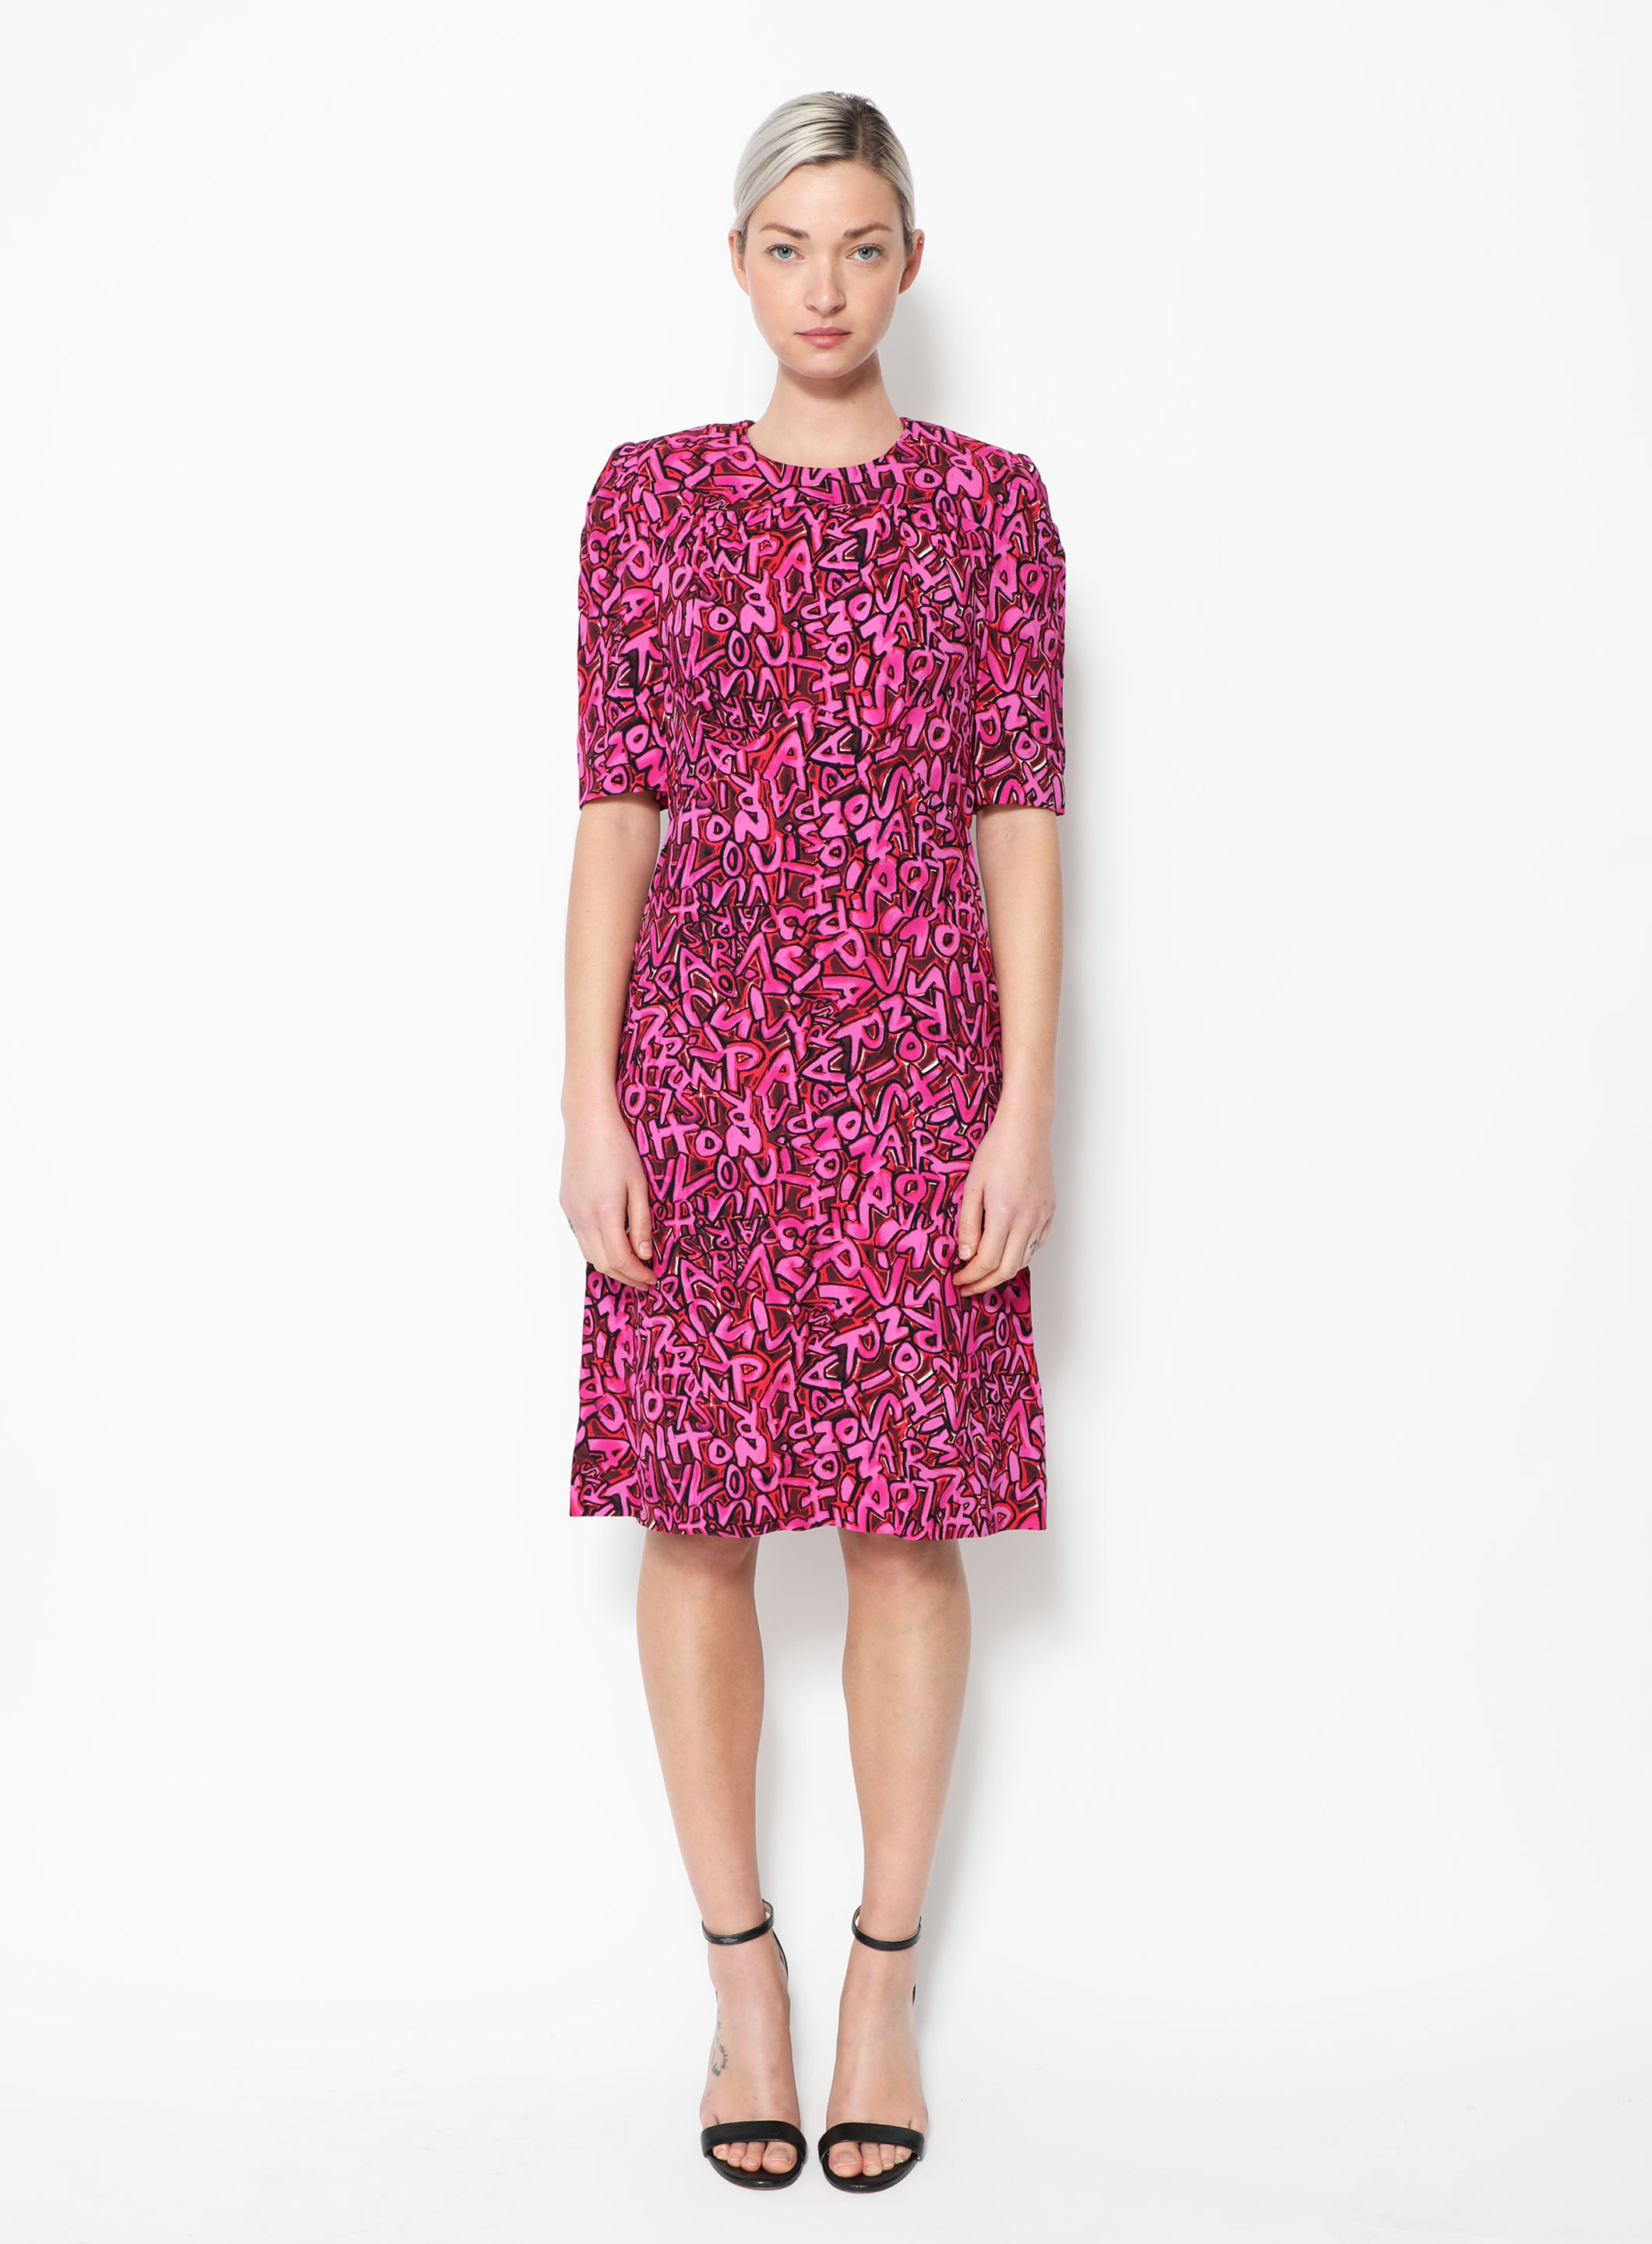 Louis Vuitton, Dresses, Louis Vuitton Stephen Sprouse Dress 38 Us 6 Dress  Leopard Animal Print W Belt